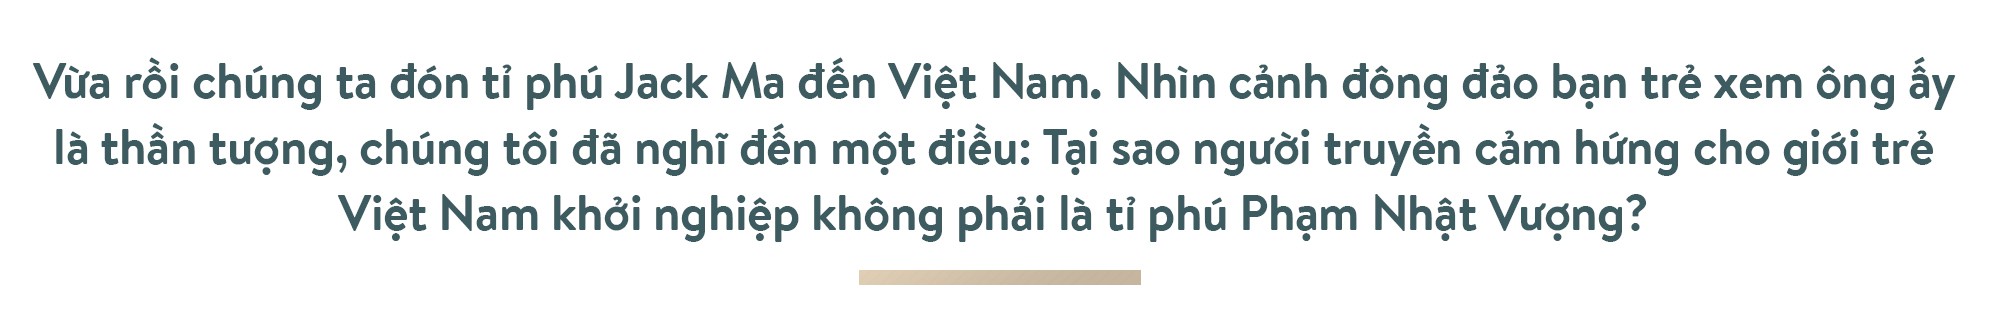 Ông Phạm Nhật Vượng: Thế giới phải biết Việt Nam trí tuệ, đẳng cấp - Ảnh 22.